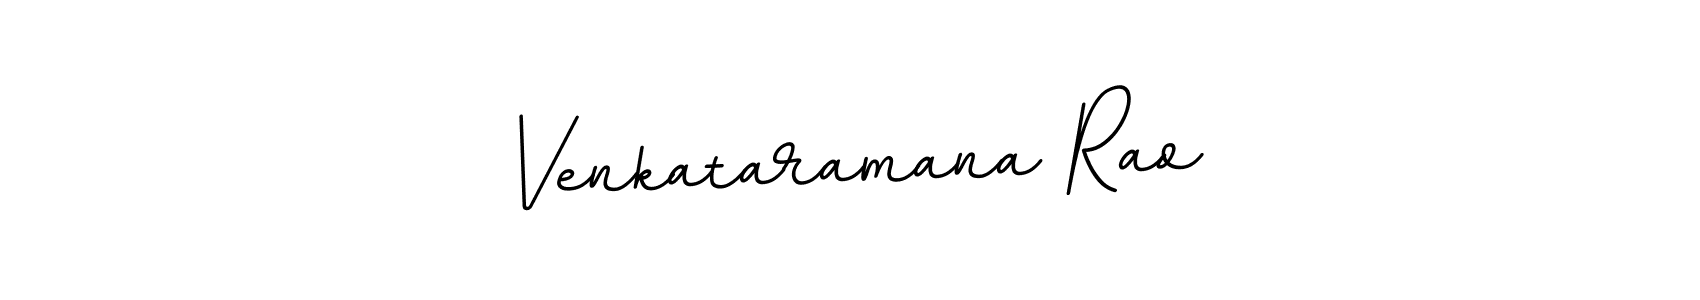 How to Draw Venkataramana Rao signature style? BallpointsItalic-DORy9 is a latest design signature styles for name Venkataramana Rao. Venkataramana Rao signature style 11 images and pictures png